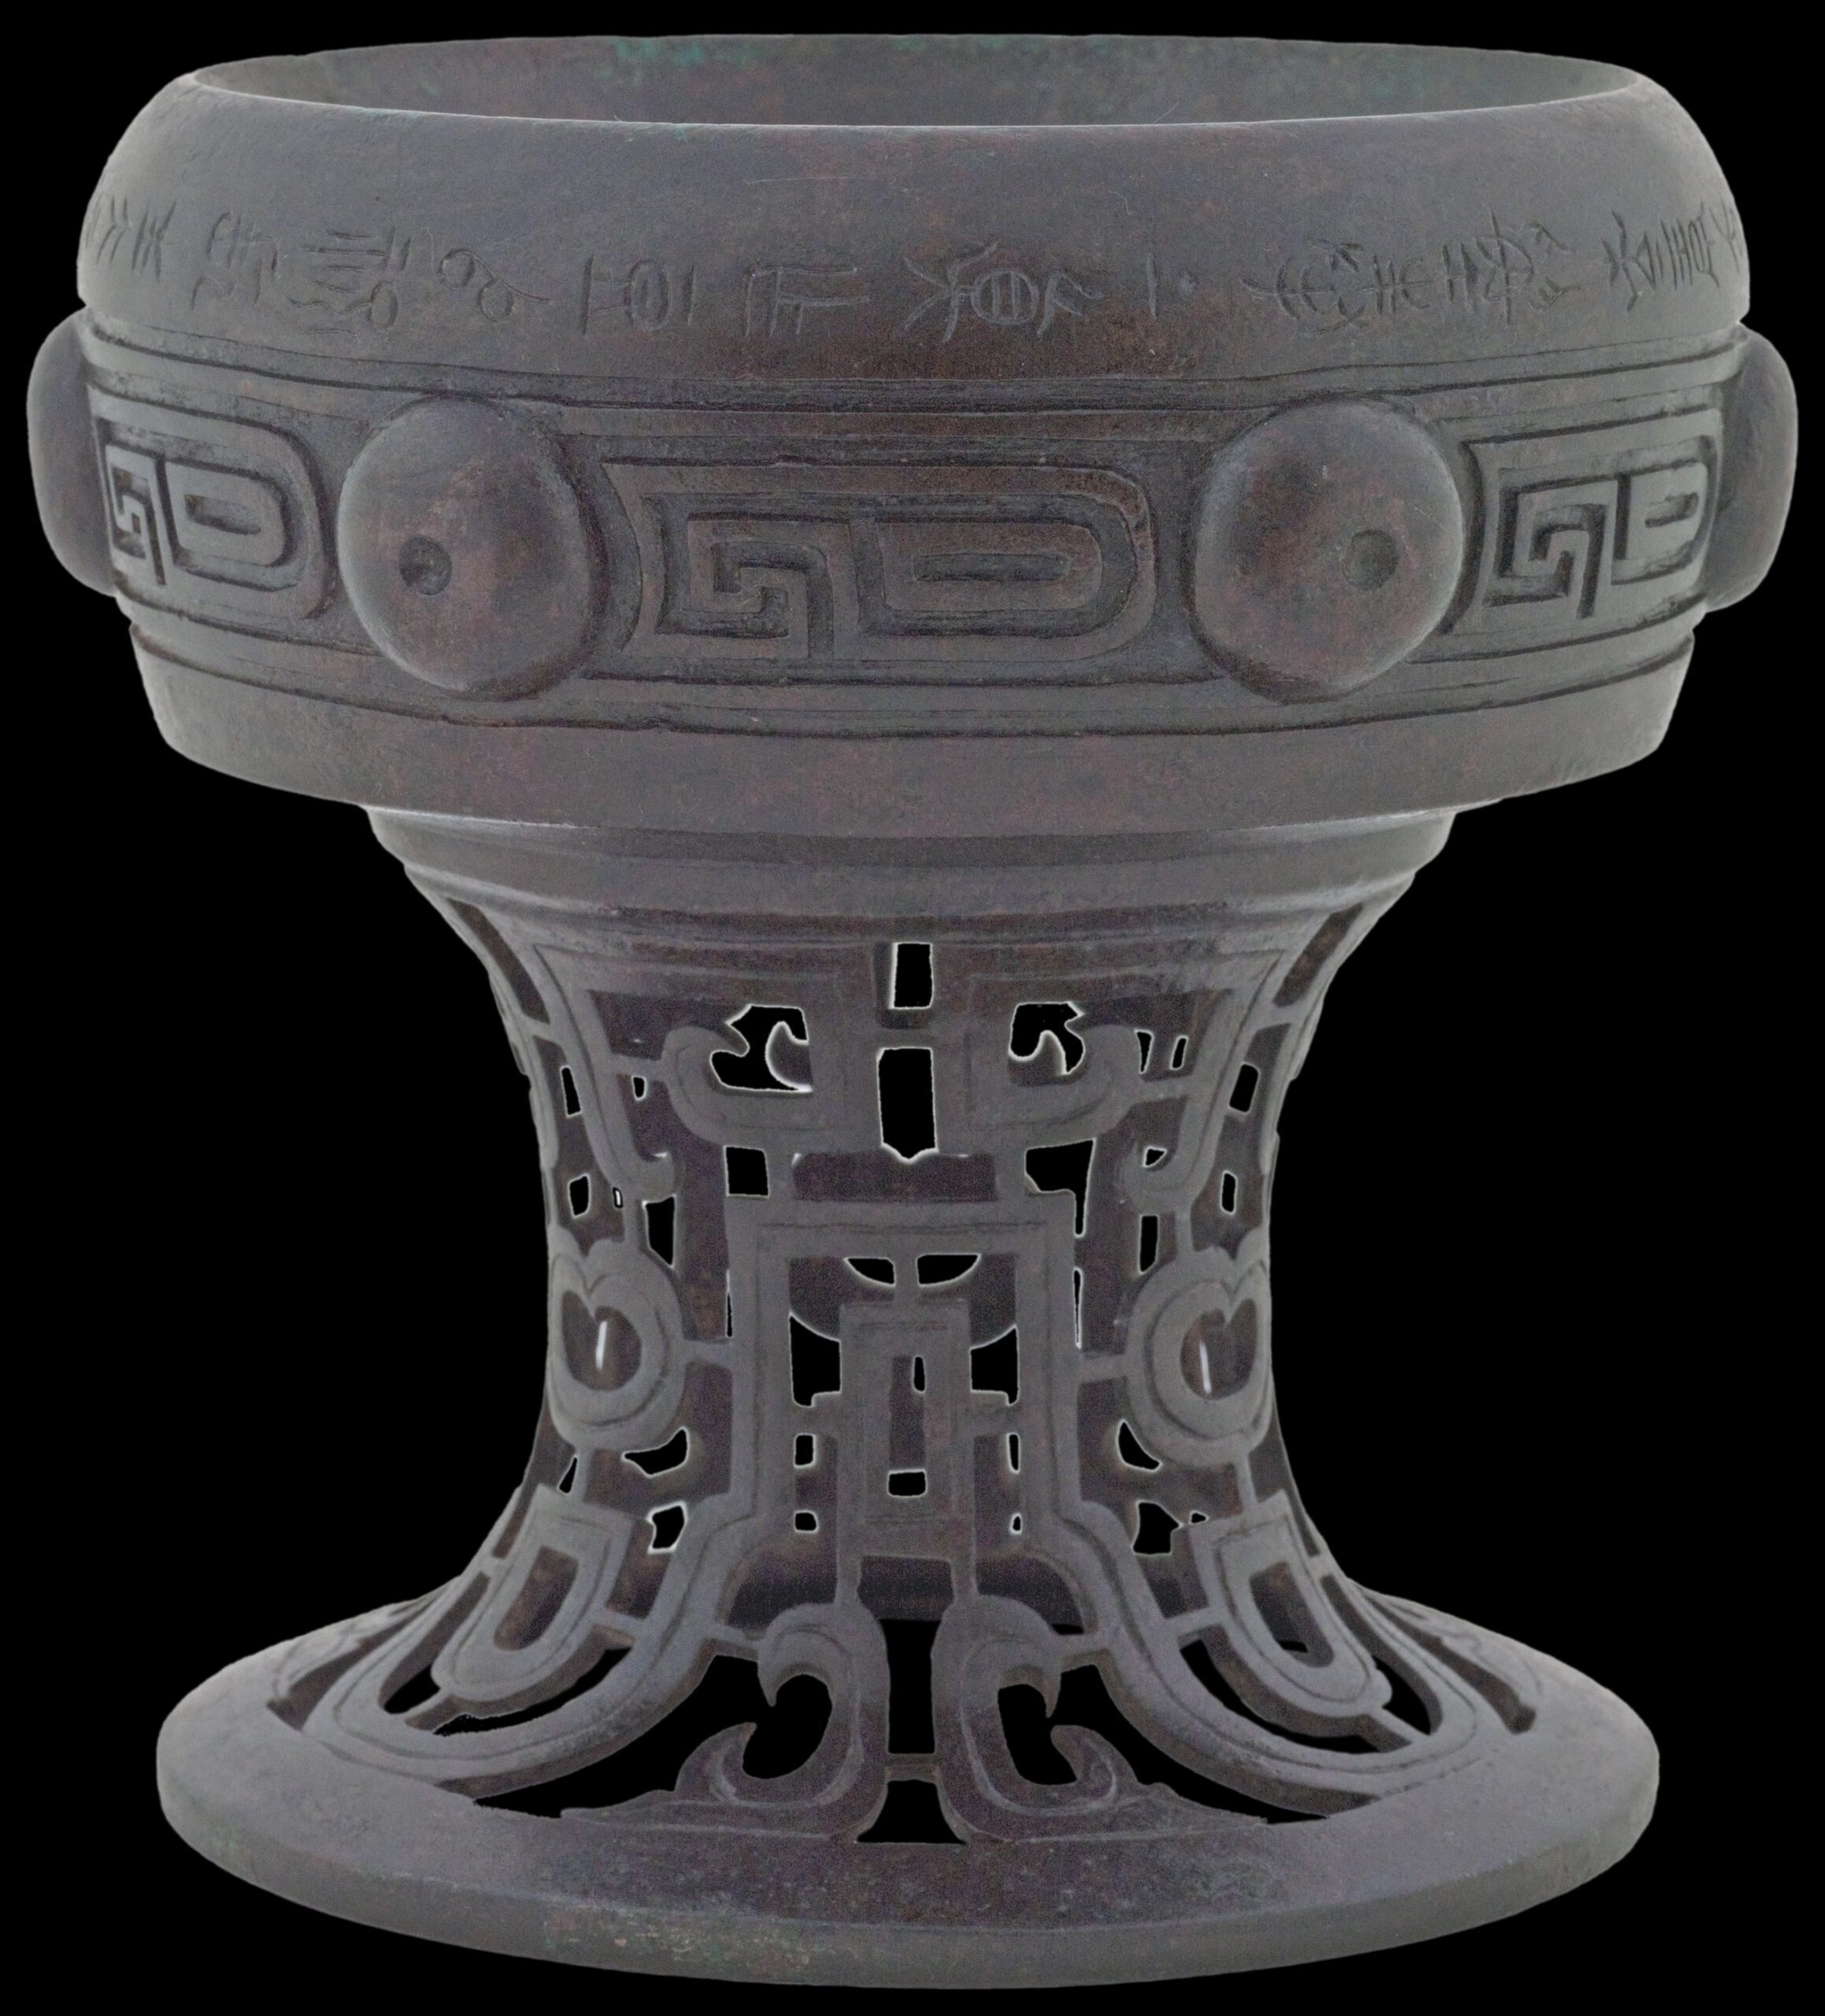 Vase dou, Chine, vers 1118. Bronze, 18,5 x 25,5 cm. CCØ Paris Musées / Musée Cernuschi, musée des arts de l’Asie de la Ville de Paris